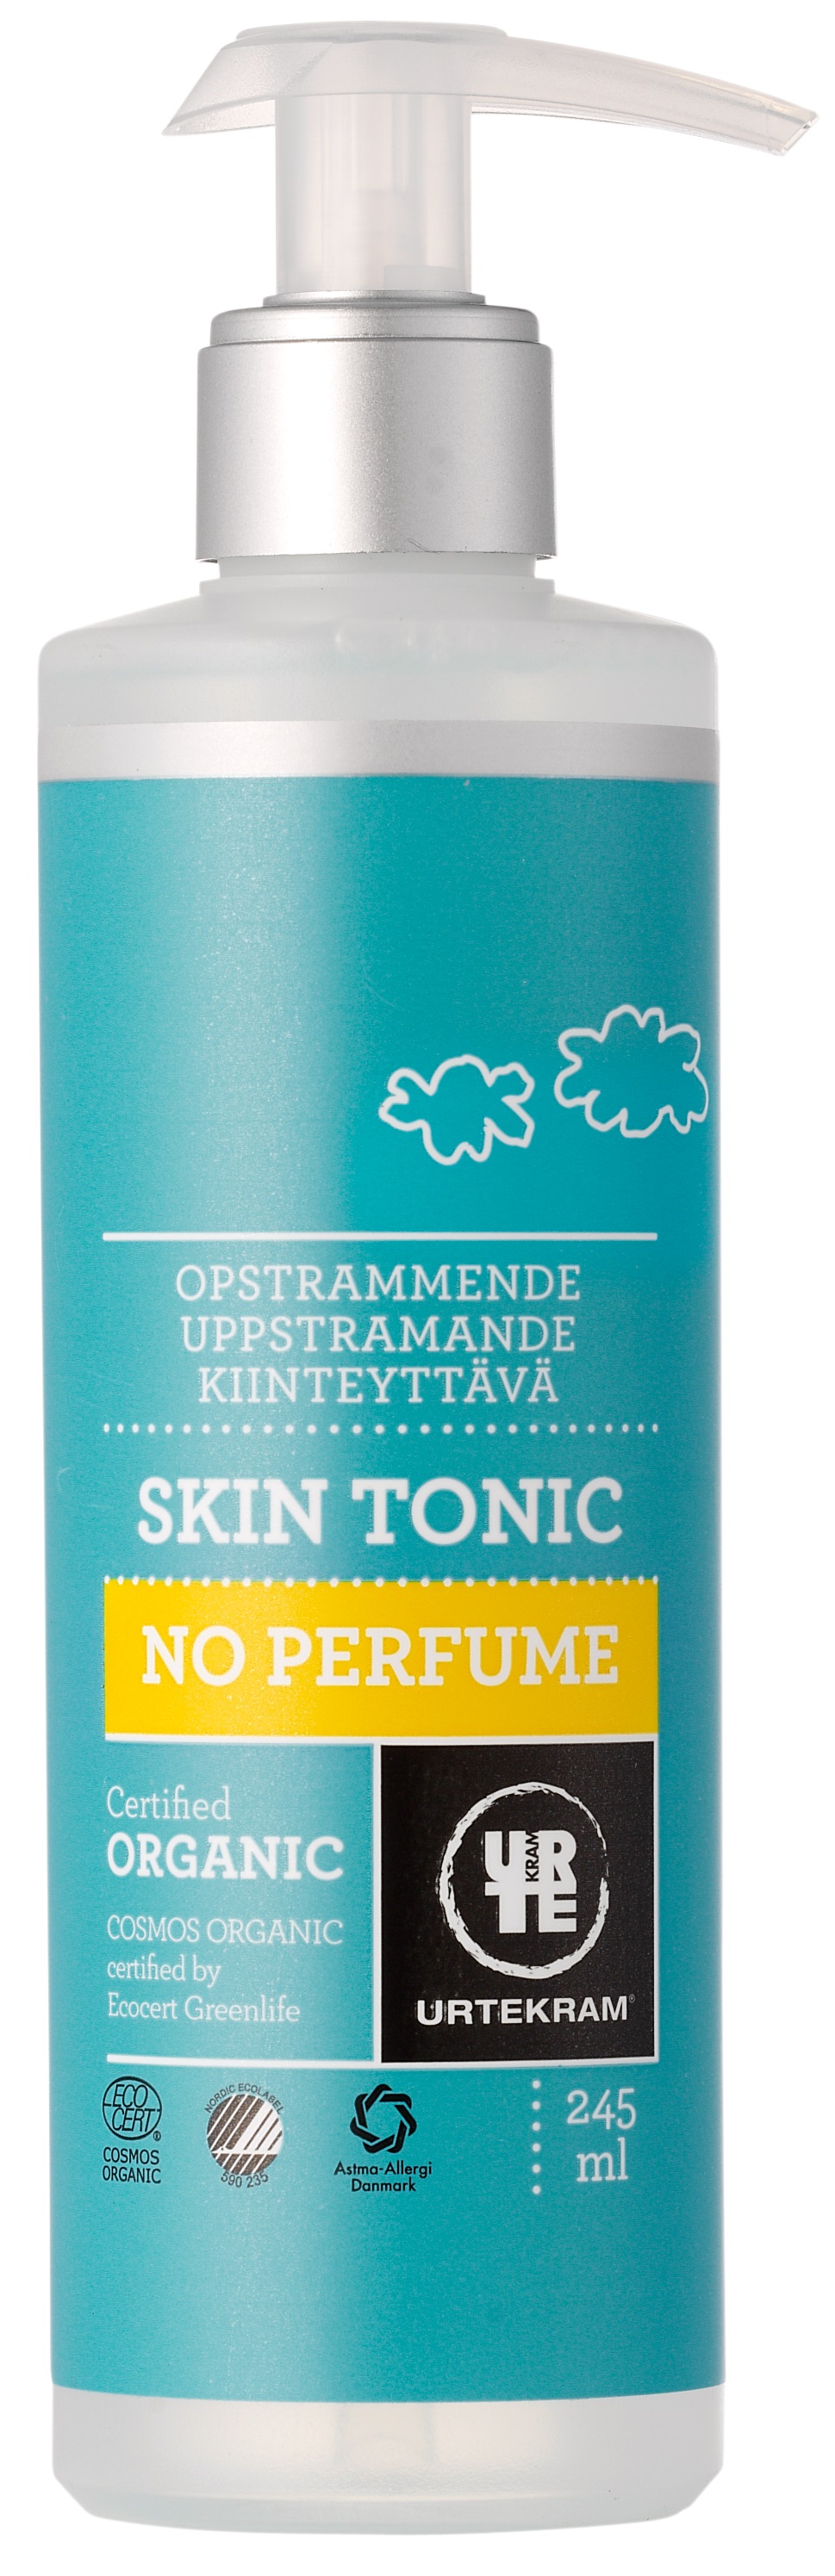 Urtekram No Perfume Skin Tonic 245ml